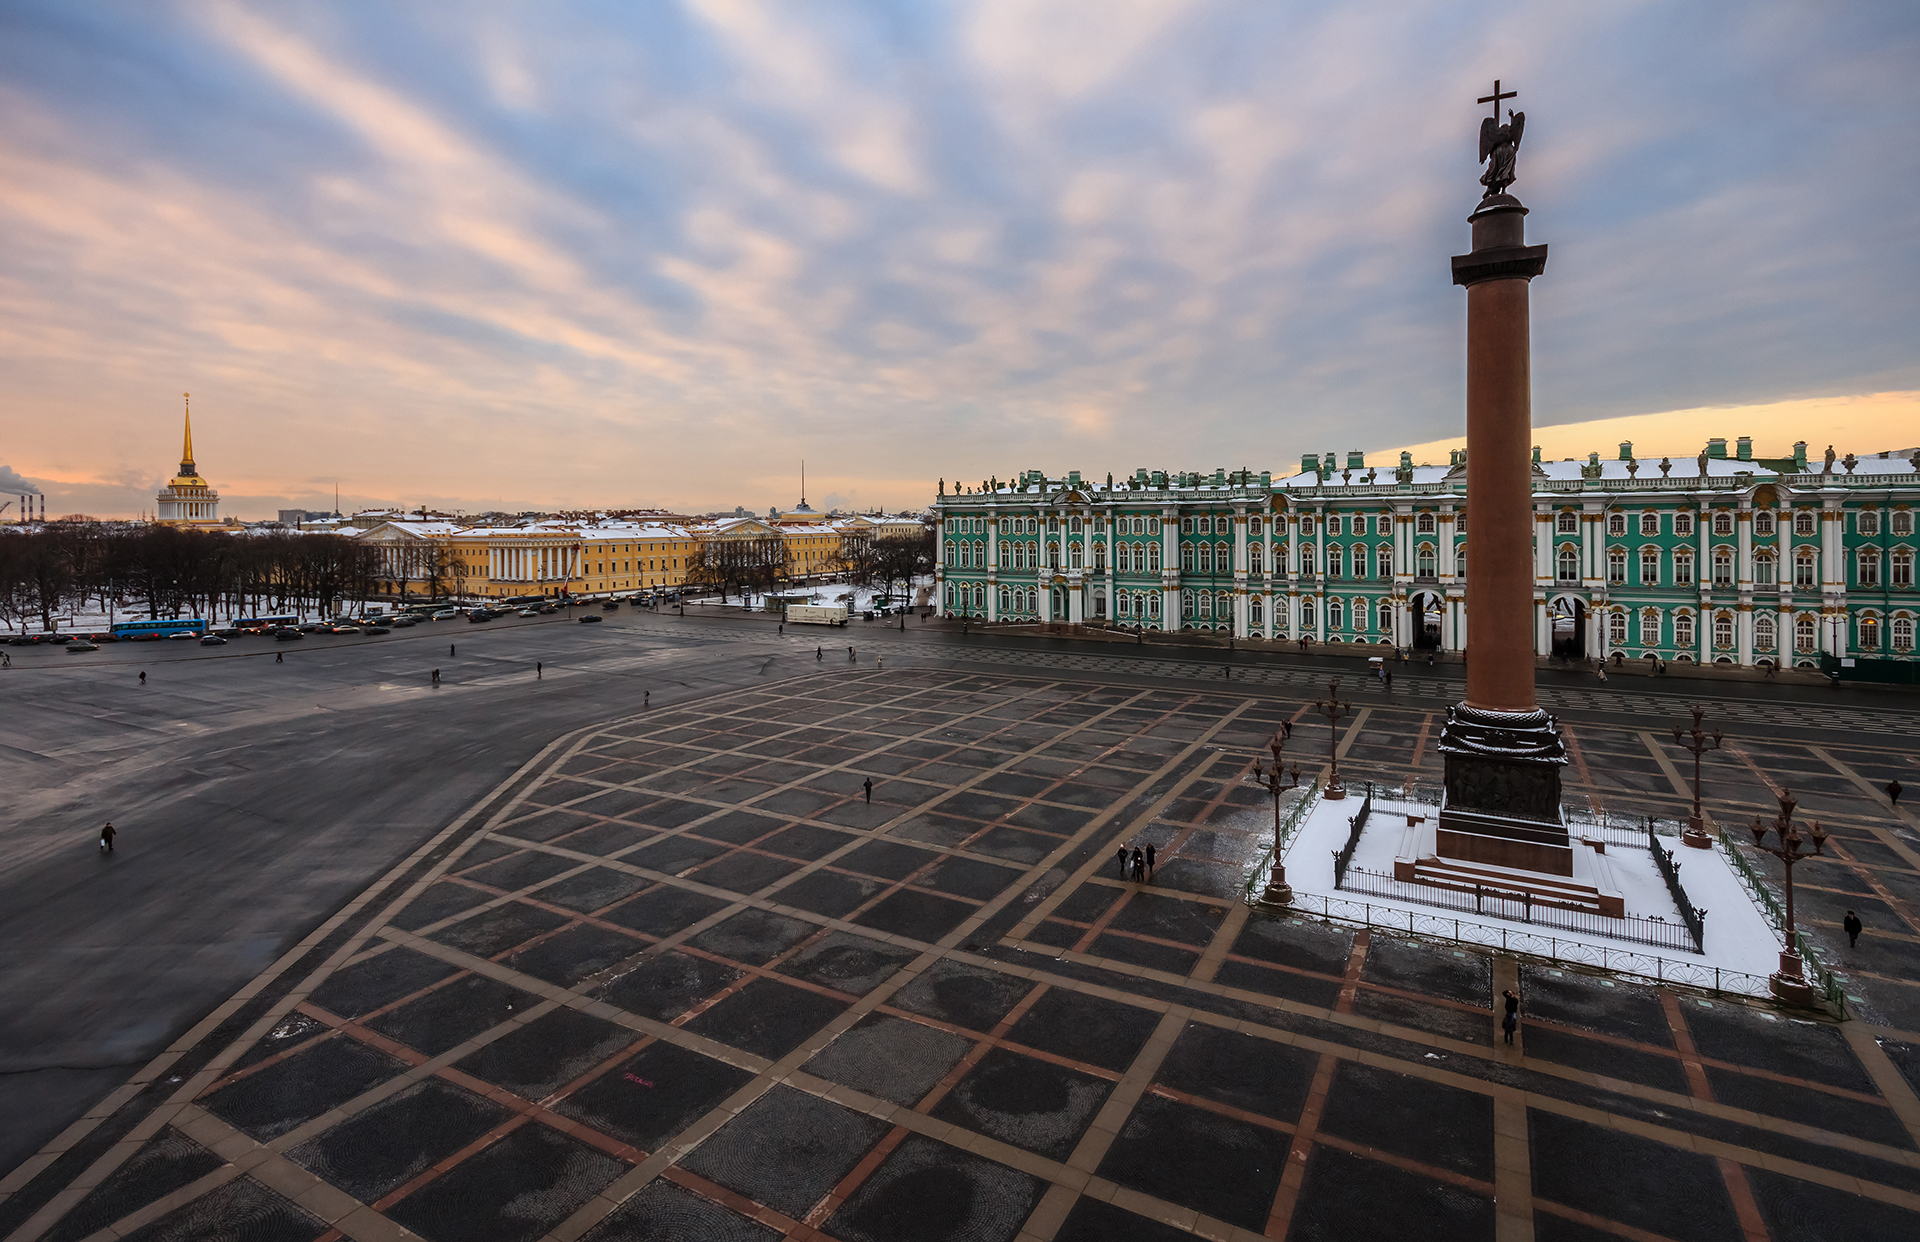 Ермитажът в Санкт Петербург е съкровищницата на Русия. Основан от императрица Екатерина Велика, дворецът на брега на Нева пази едни от най-известните колекции от произведения на изкуството в света.